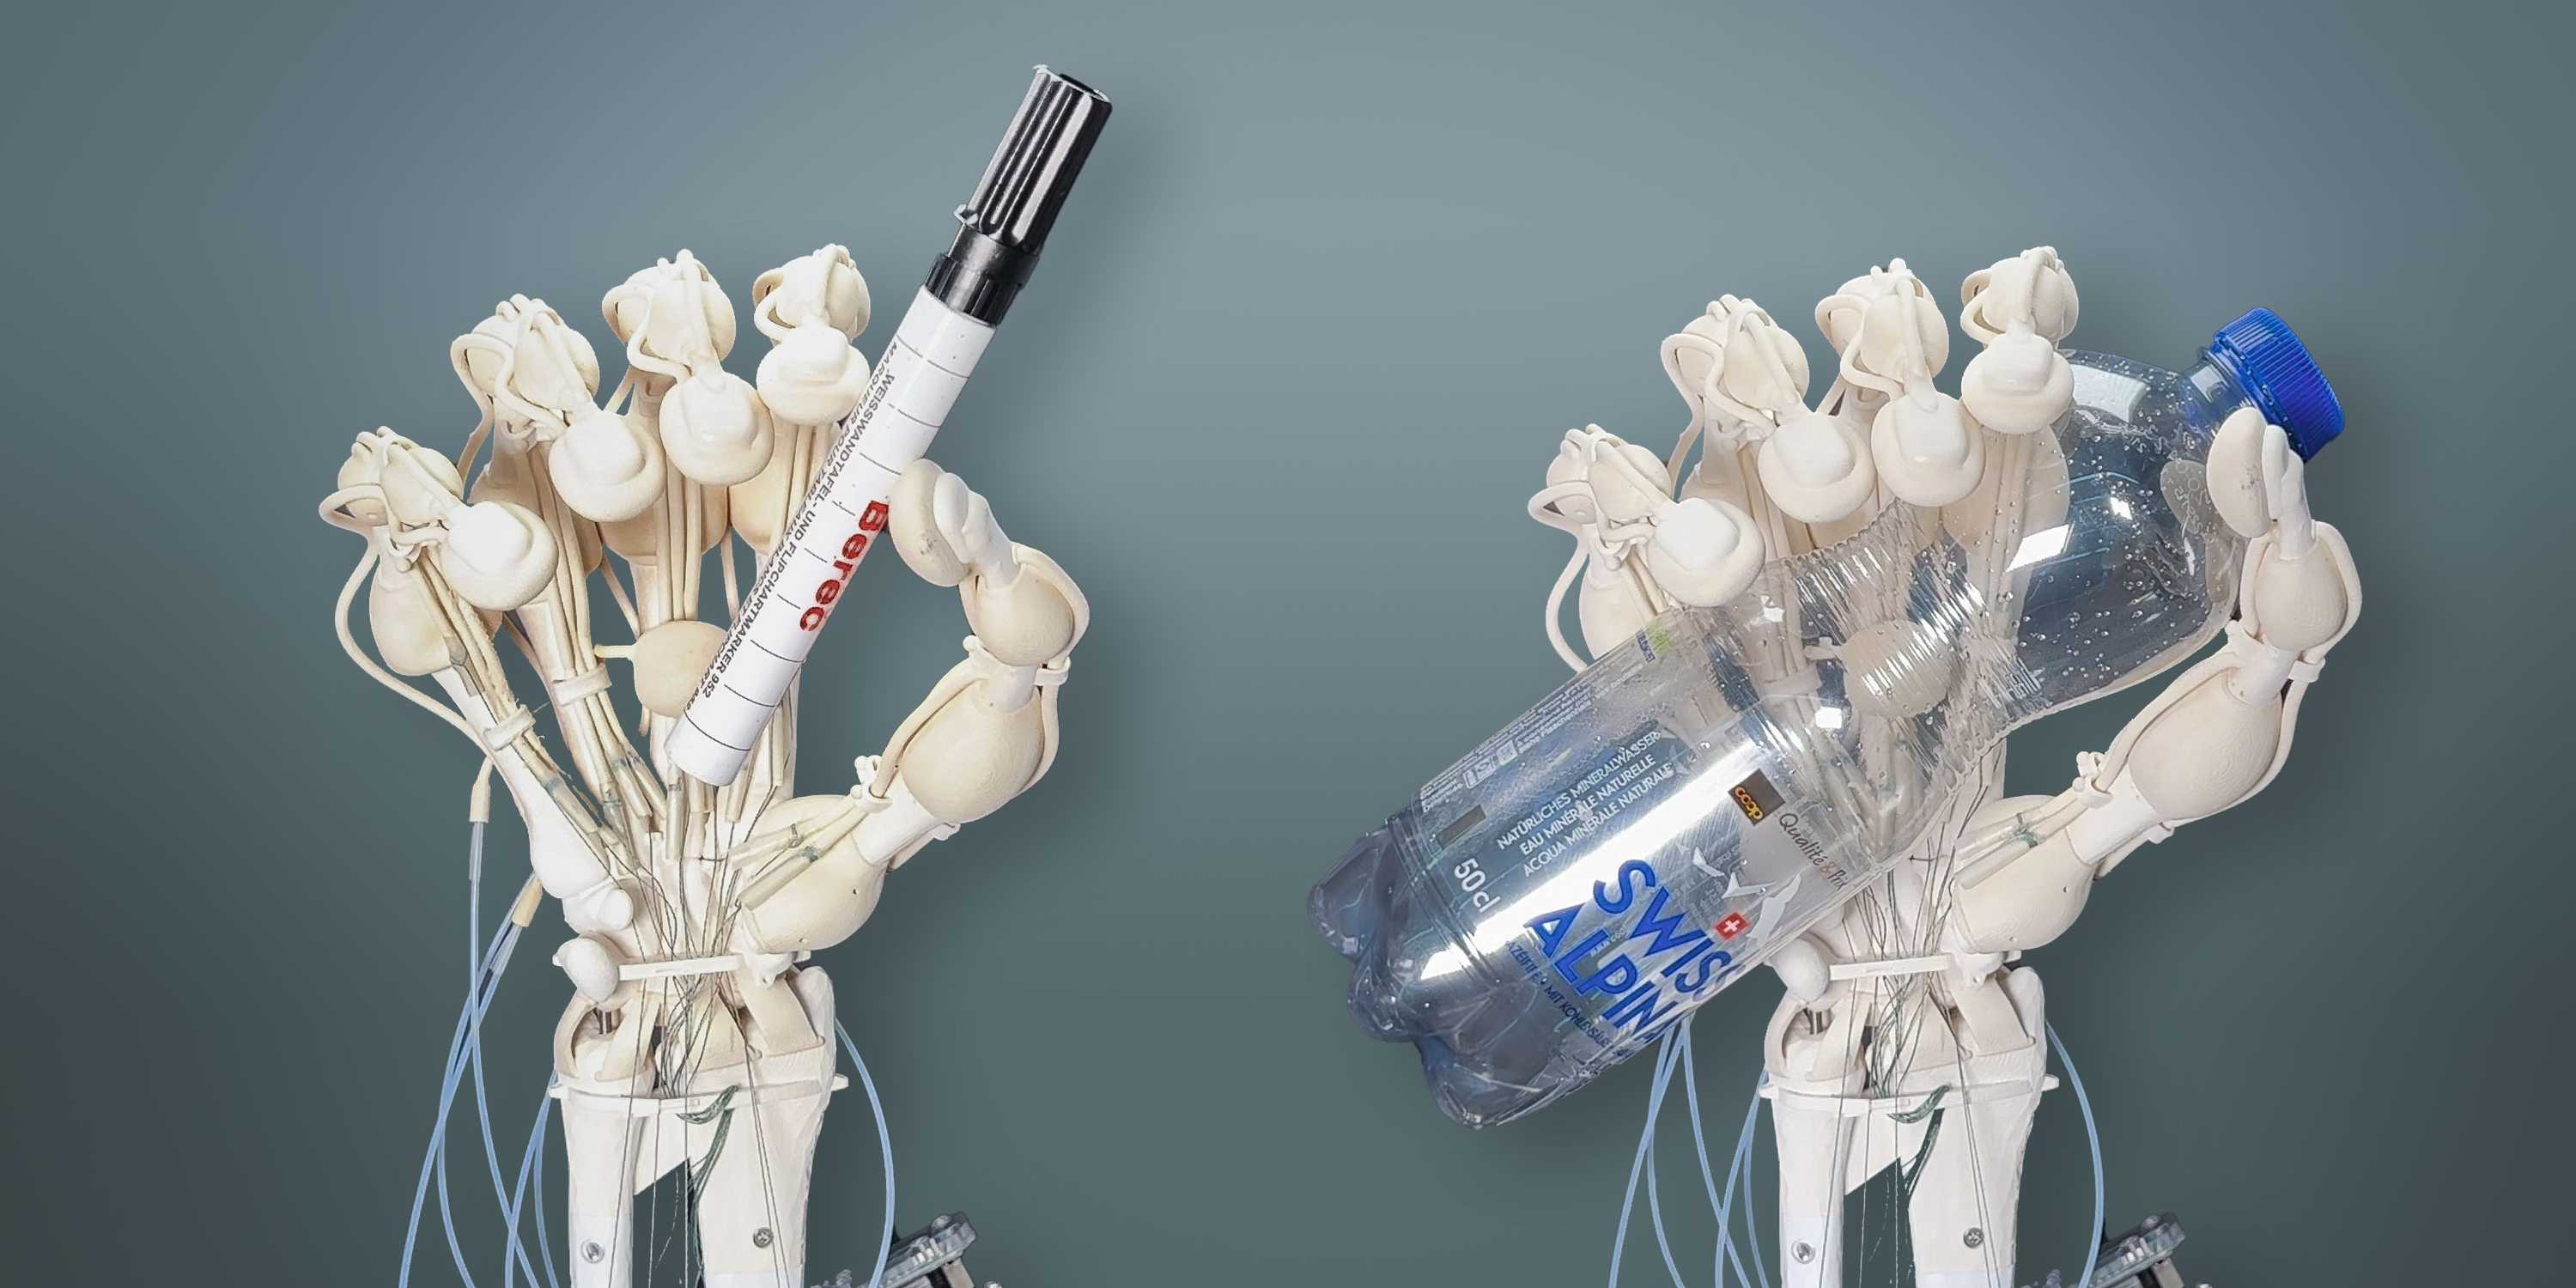 Forskere fra ETH Zürich har for første gang formået at printe en robotarm med knogler, ledbånd og sener.